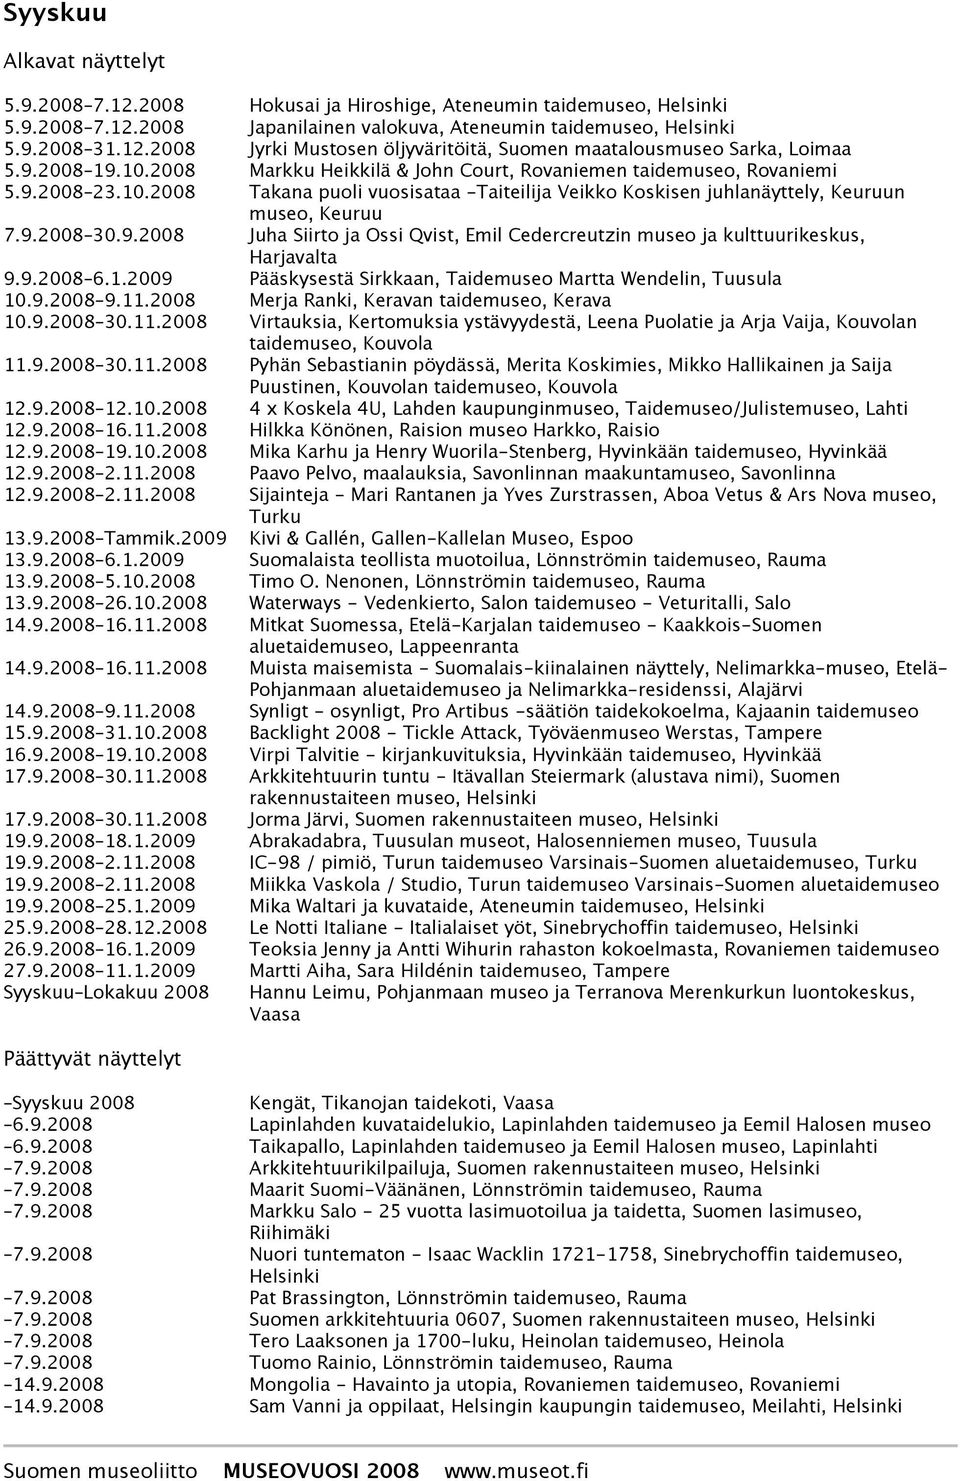 9.2008 Juha Siirto ja Ossi Qvist, Emil Cedercreutzin museo ja kulttuurikeskus, Harjavalta 9.9.2008 6.1.2009 Pääskysestä Sirkkaan, Taidemuseo Martta Wendelin, Tuusula 10.9.2008 9.11.